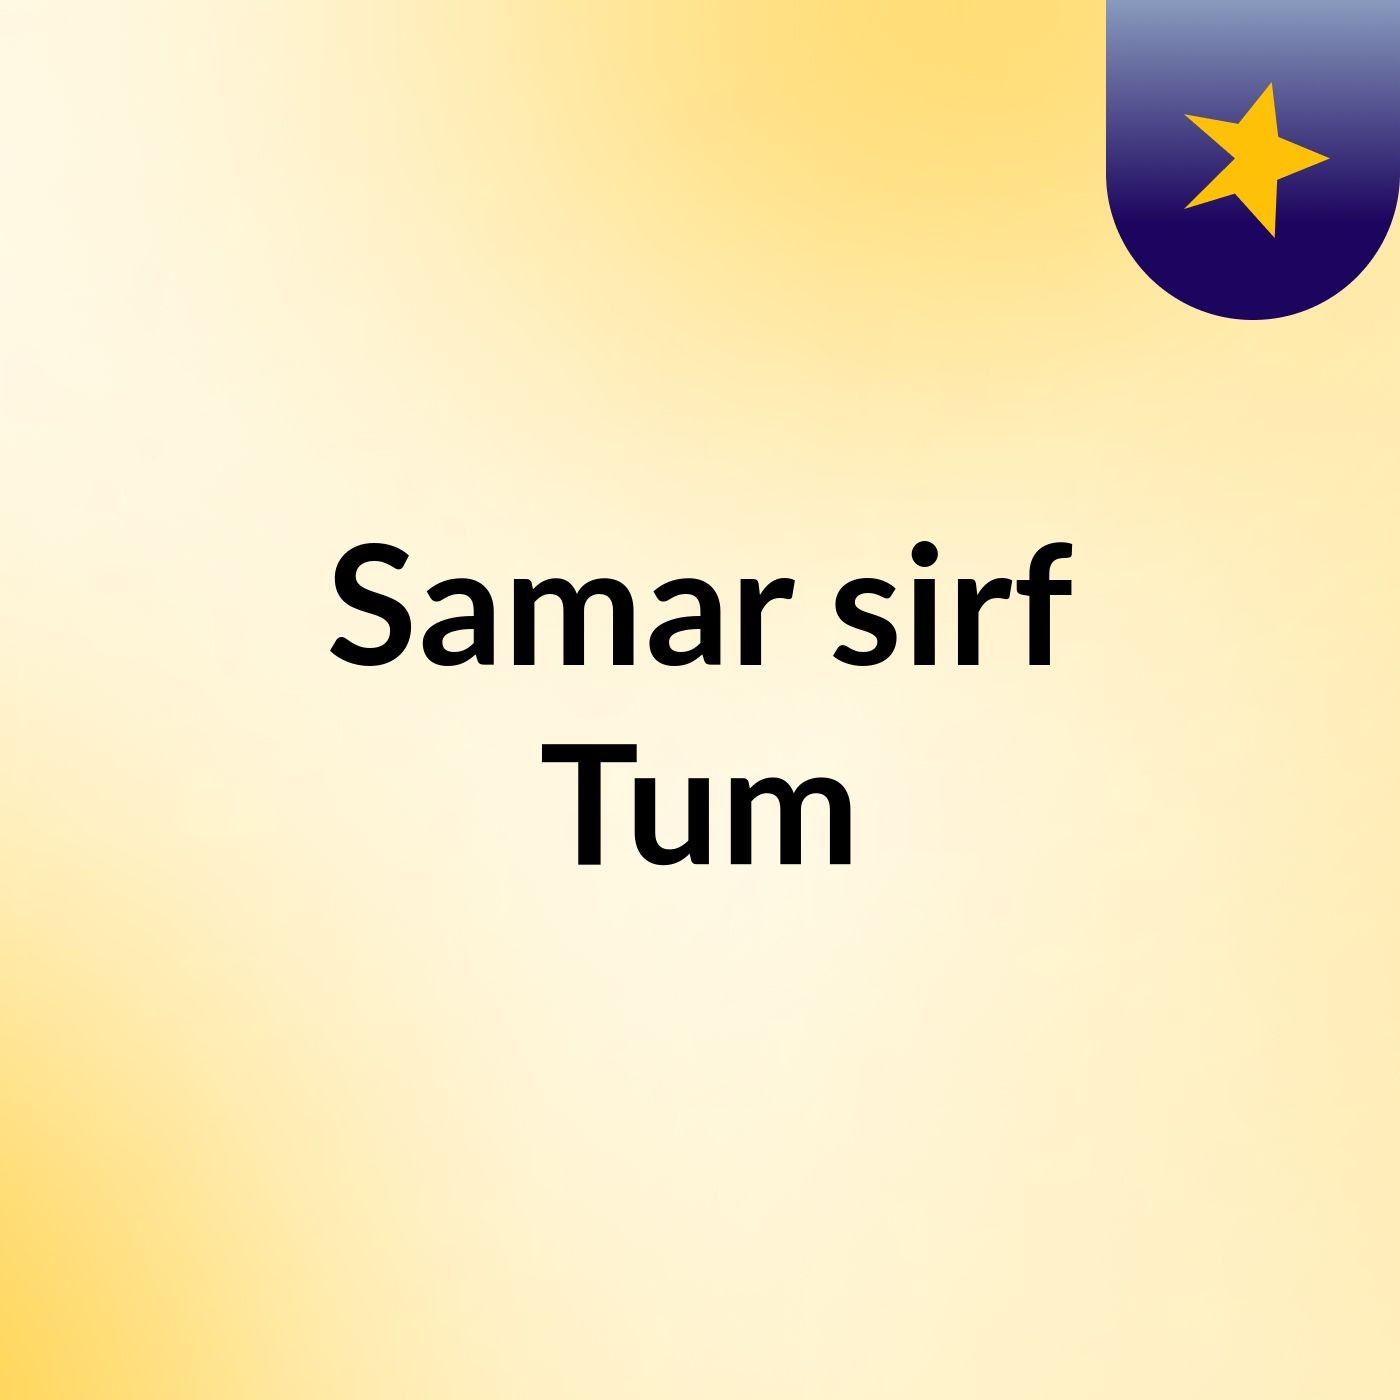 Episode 112 - Samar sirf Tum